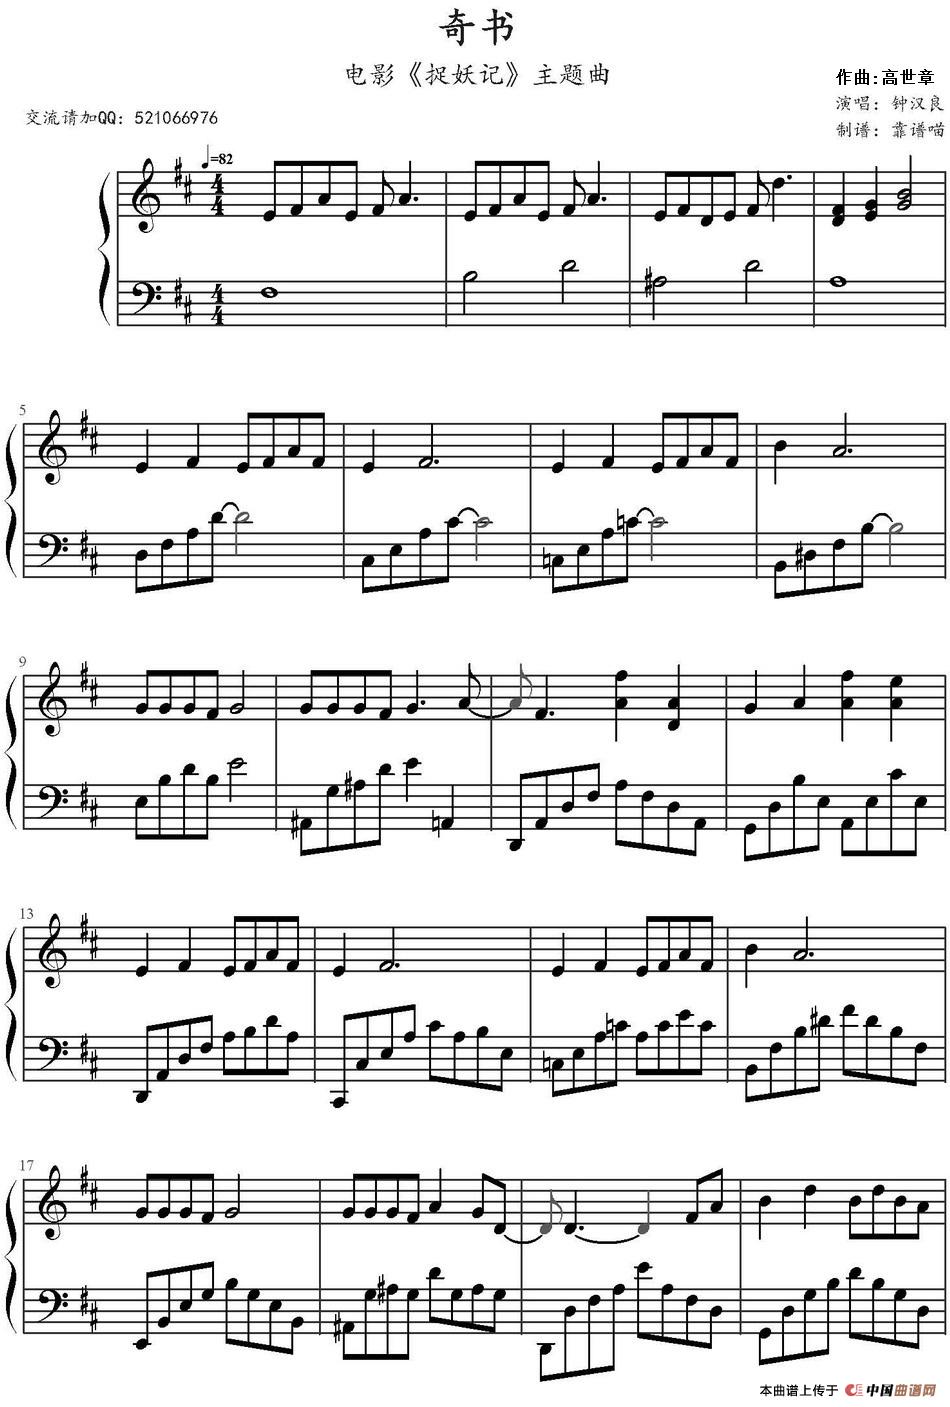 《奇书》钢琴曲谱图分享